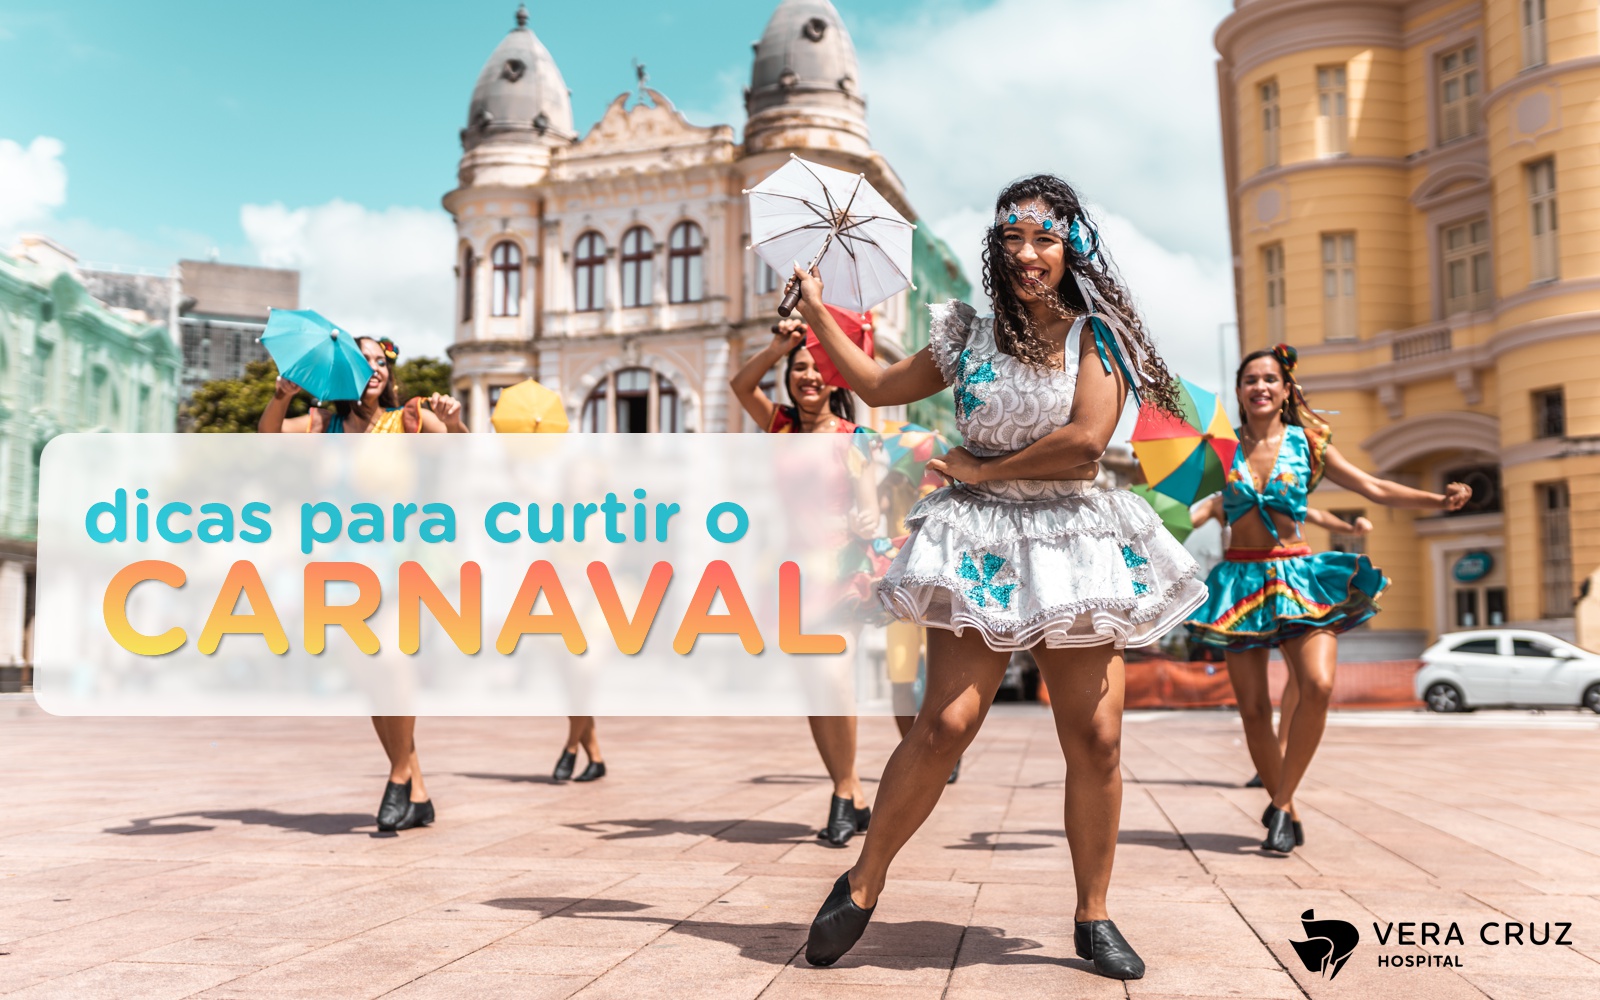 Hospital Vera Cruz - Dicas para curtir o Carnaval - Capa